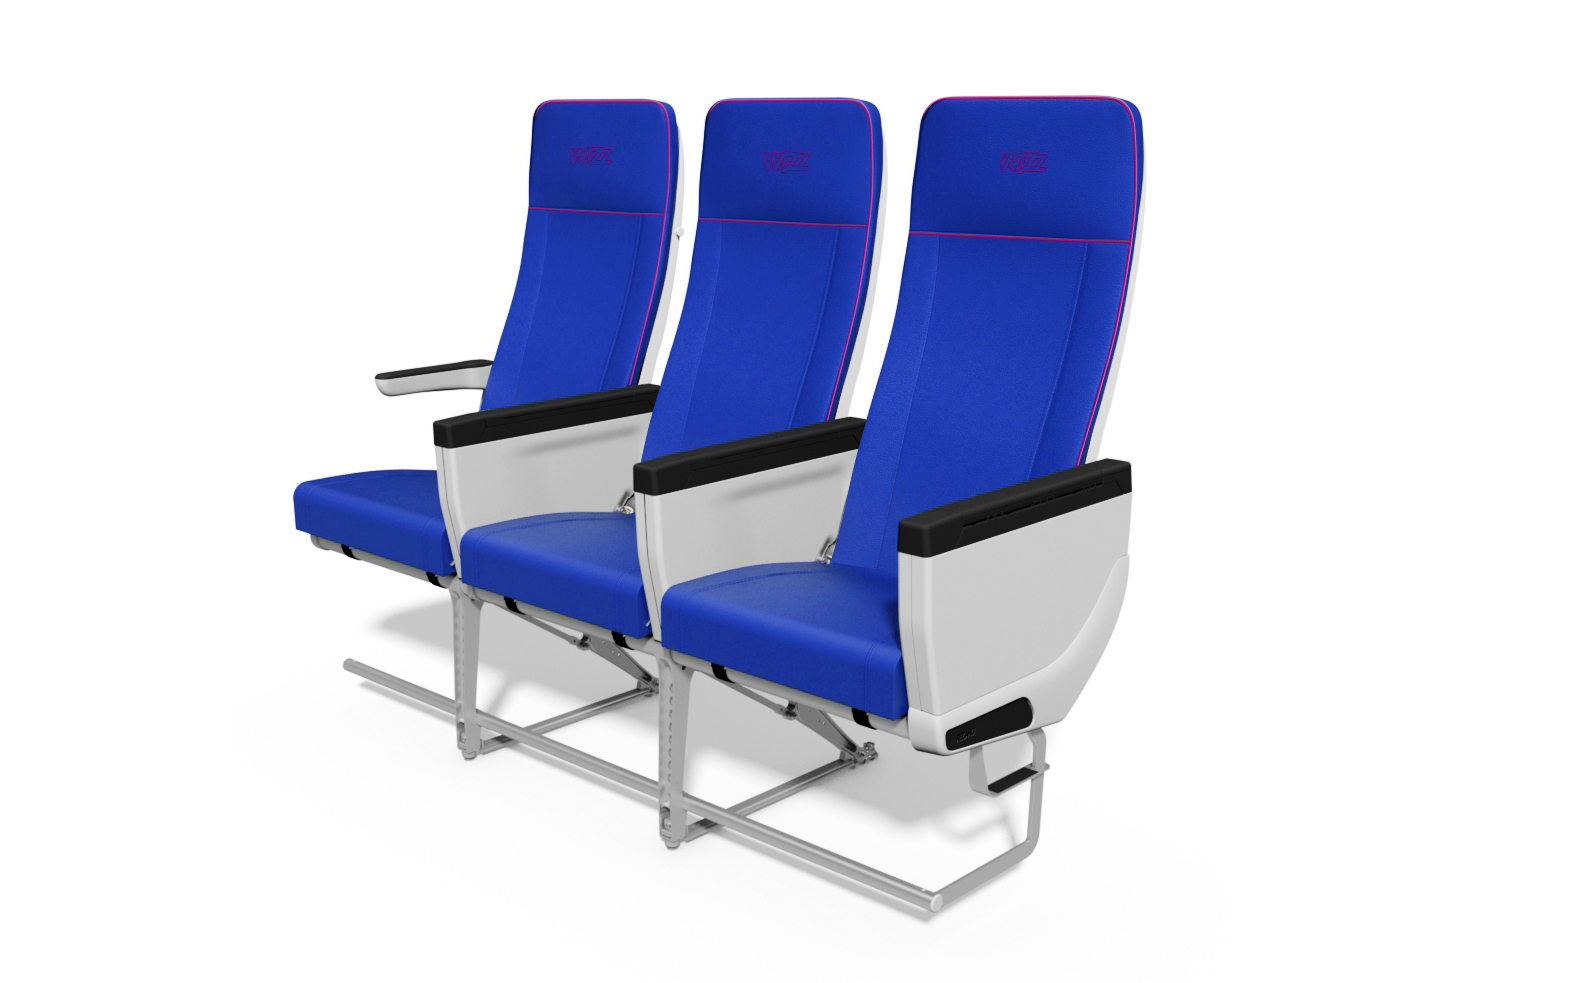 vloek Ingrijpen Buitensporig Wizz Air bestelt 31.767 vliegtuigstoelen bij Recaro | Luchtvaartnieuws